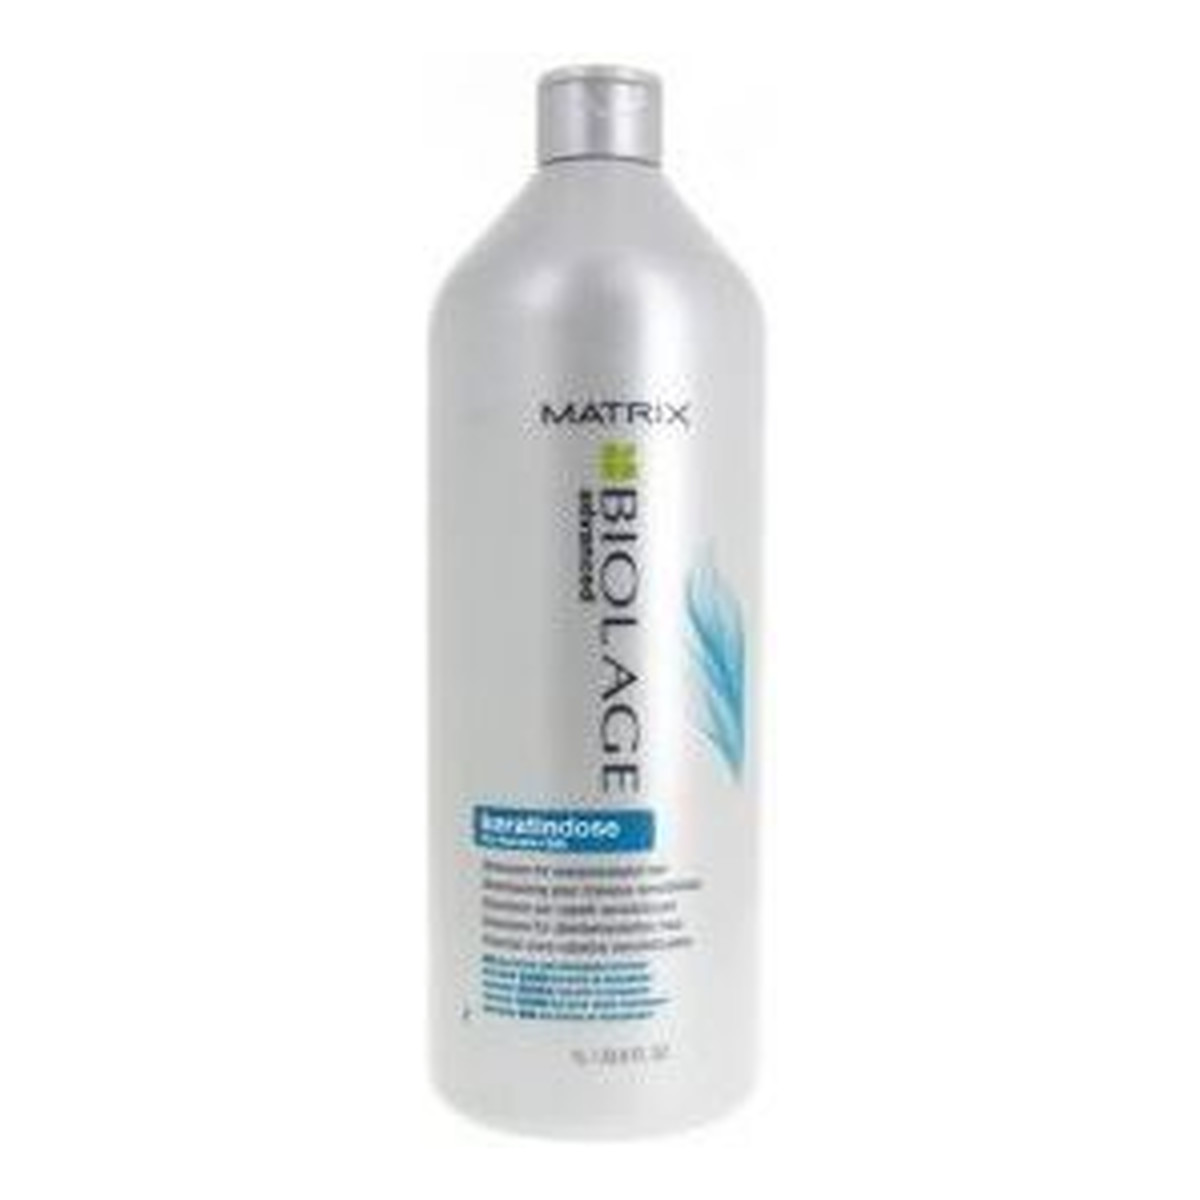 Matrix Biolage Advanced Keratindose Shampoo szampon nawilżająco-wygładzający do włosów zniszczonych zabiegami chemicznymi 1000ml